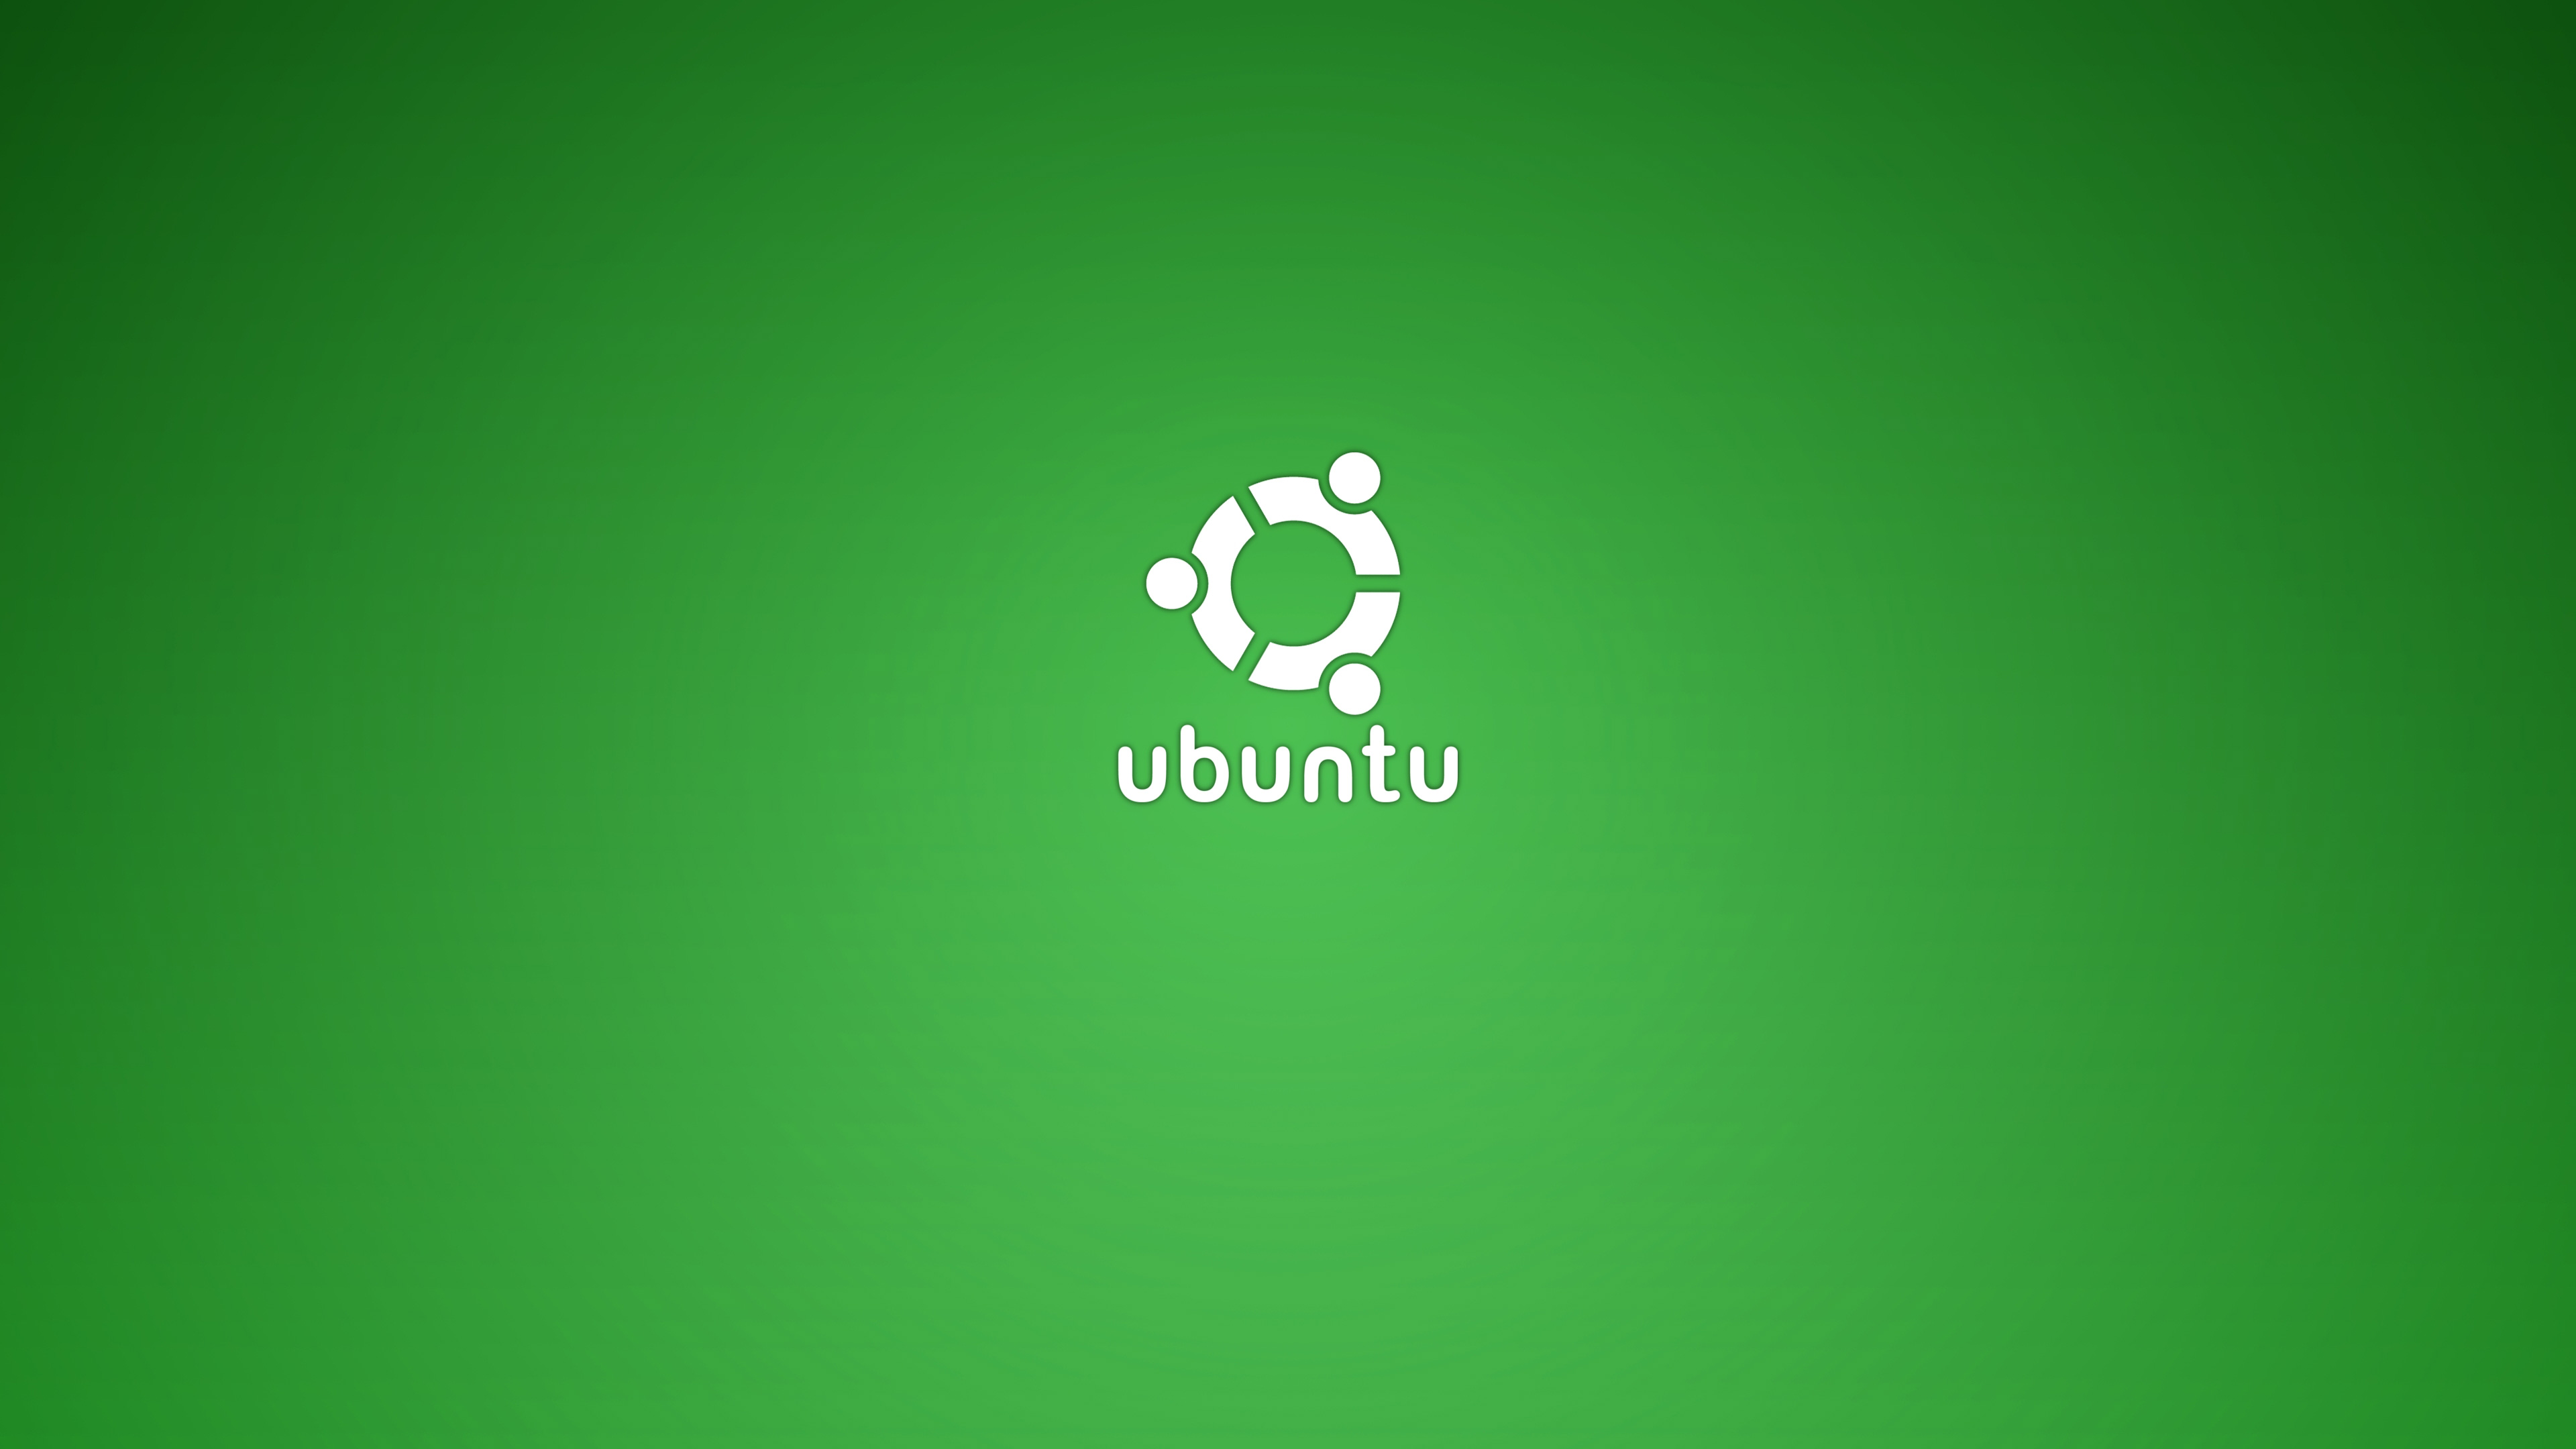 fond d'écran ubuntu,vert,police de caractère,texte,graphique,système opérateur